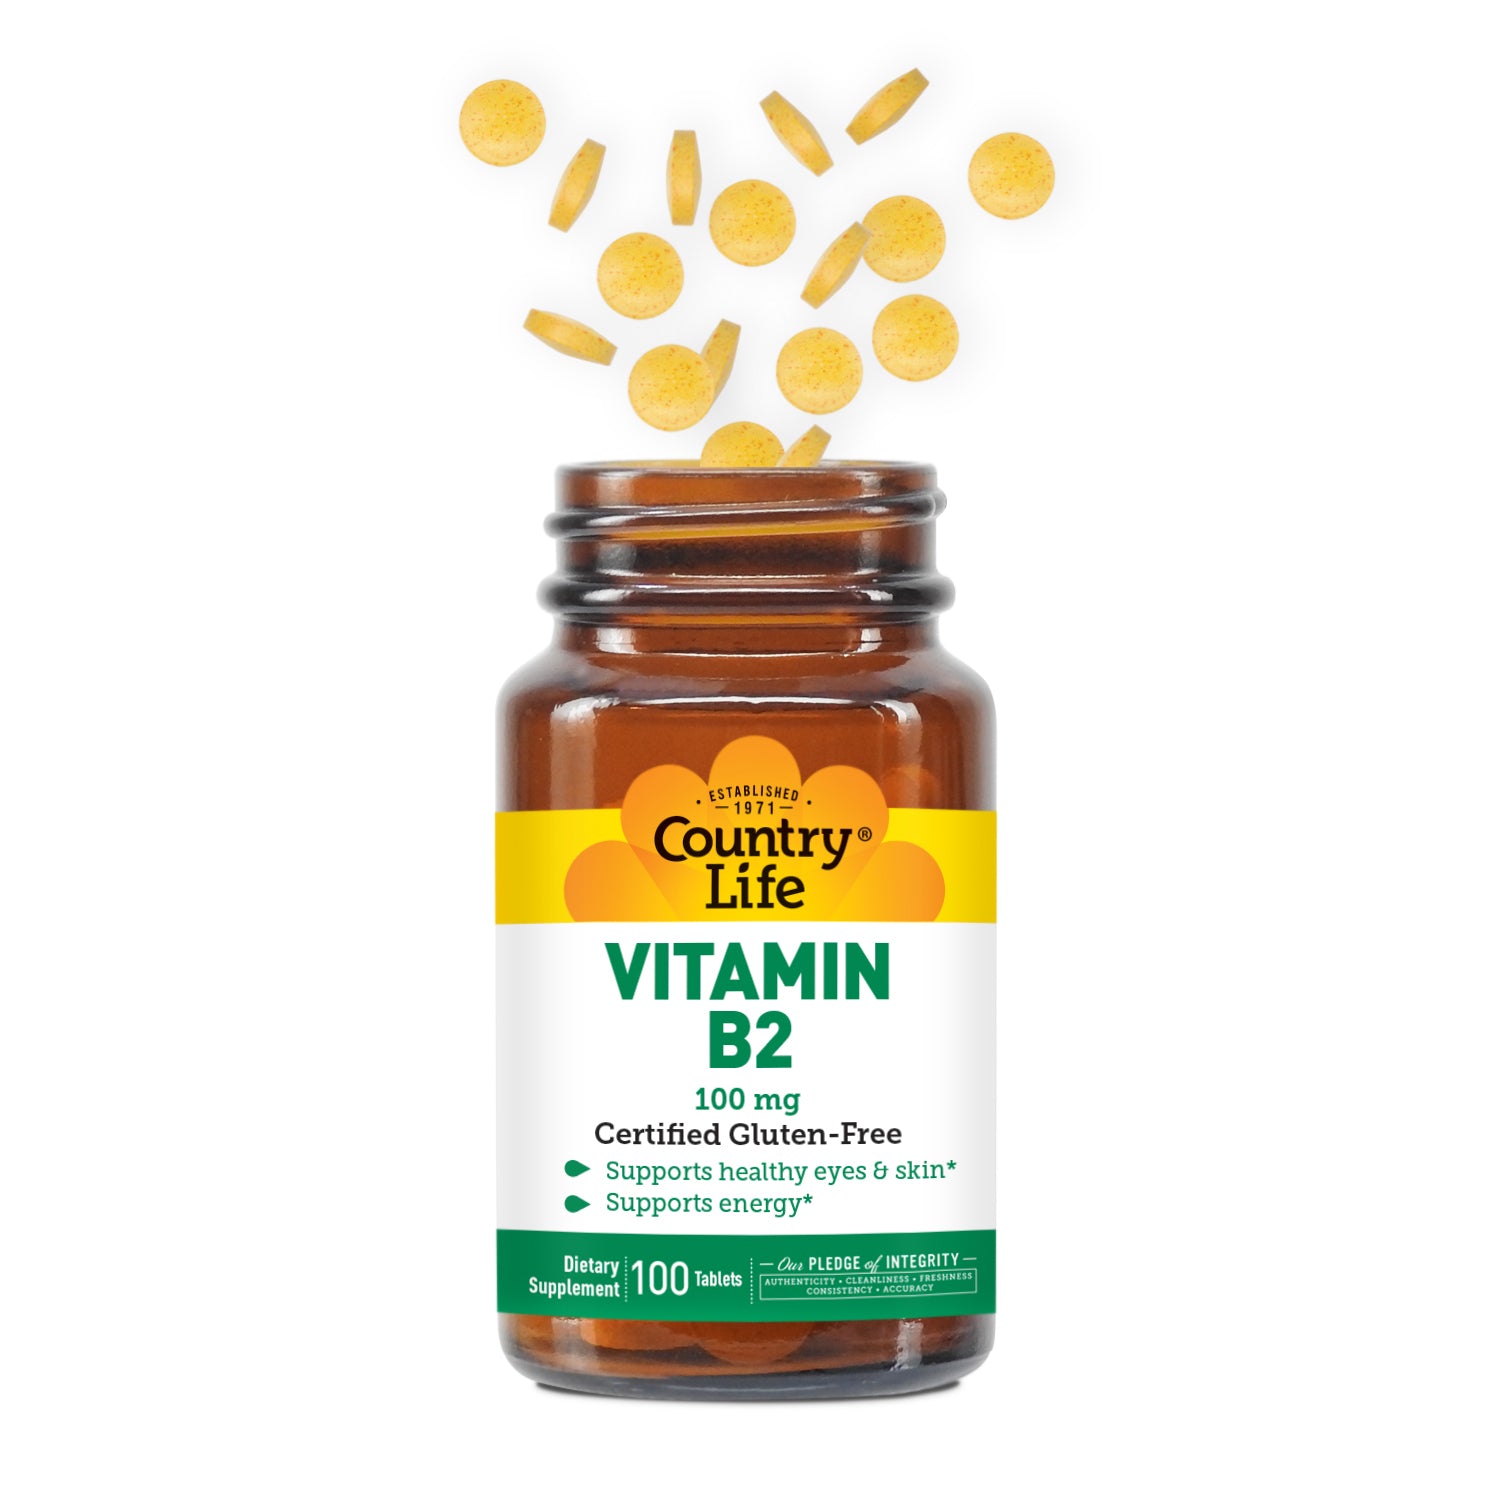 Vitamin B-2 100 mg